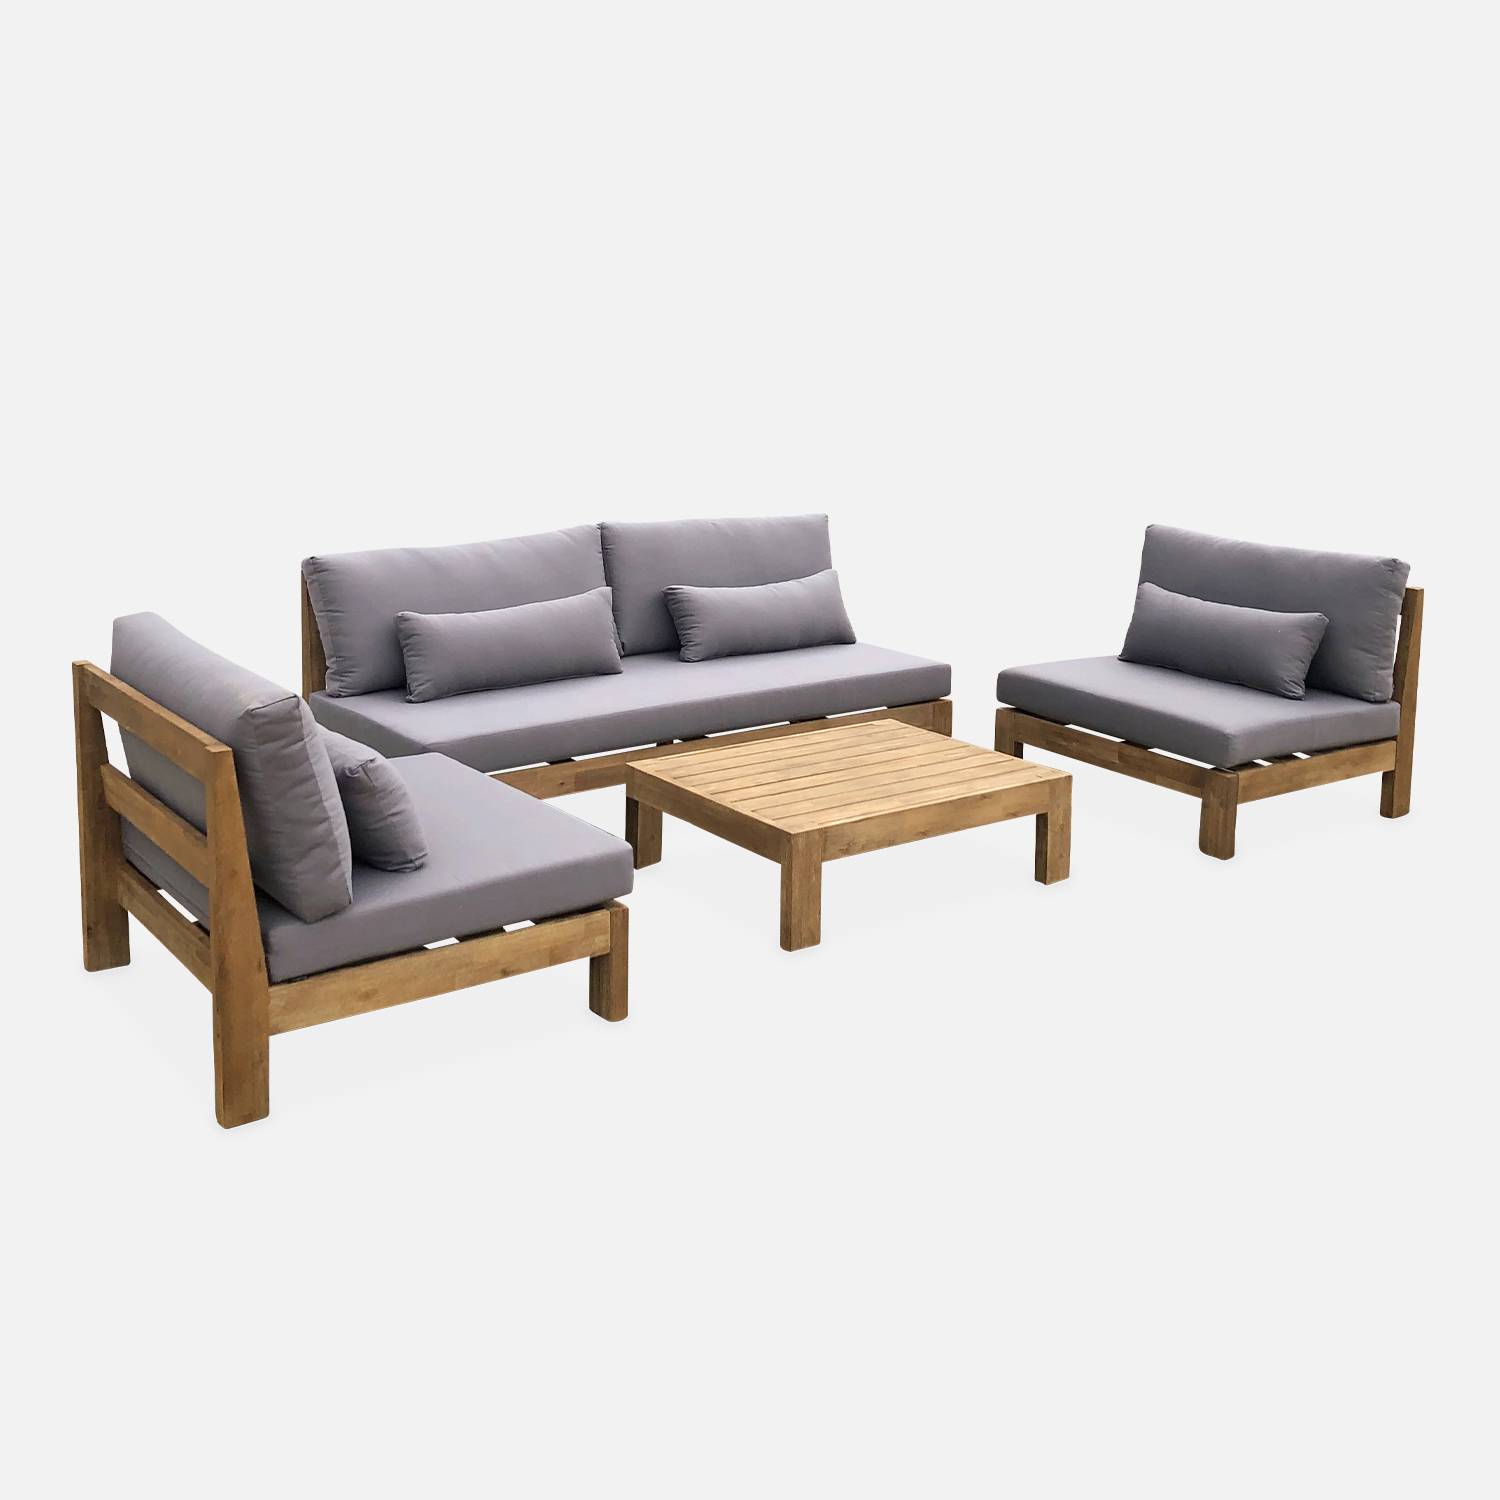 Conjunto de muebles de jardín XXL de madera cepillada, efecto blanqueado - BAHIA - cojines antracita, ultra confortables, de 5 a 7 plazas,sweeek,Photo2